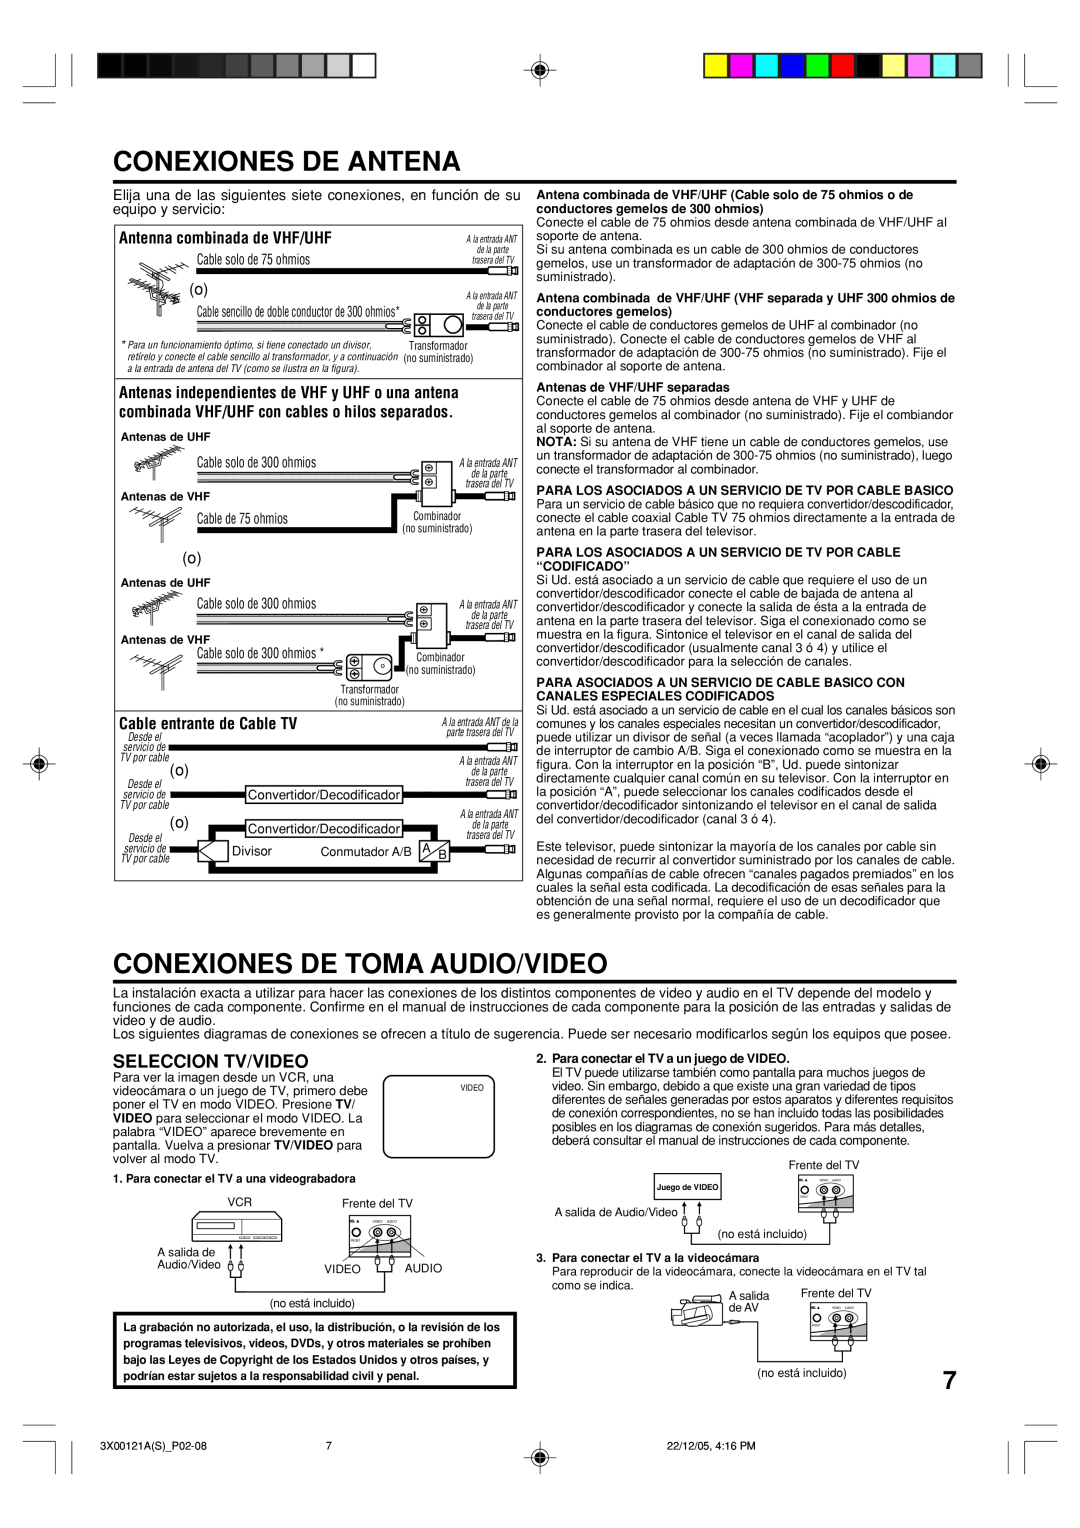 Toshiba 13A26 manual Conexiones De Antena, Conexiones De Toma Audio/Video, Seleccion Tv/Video, Antenna combinada de VHF/UHF 